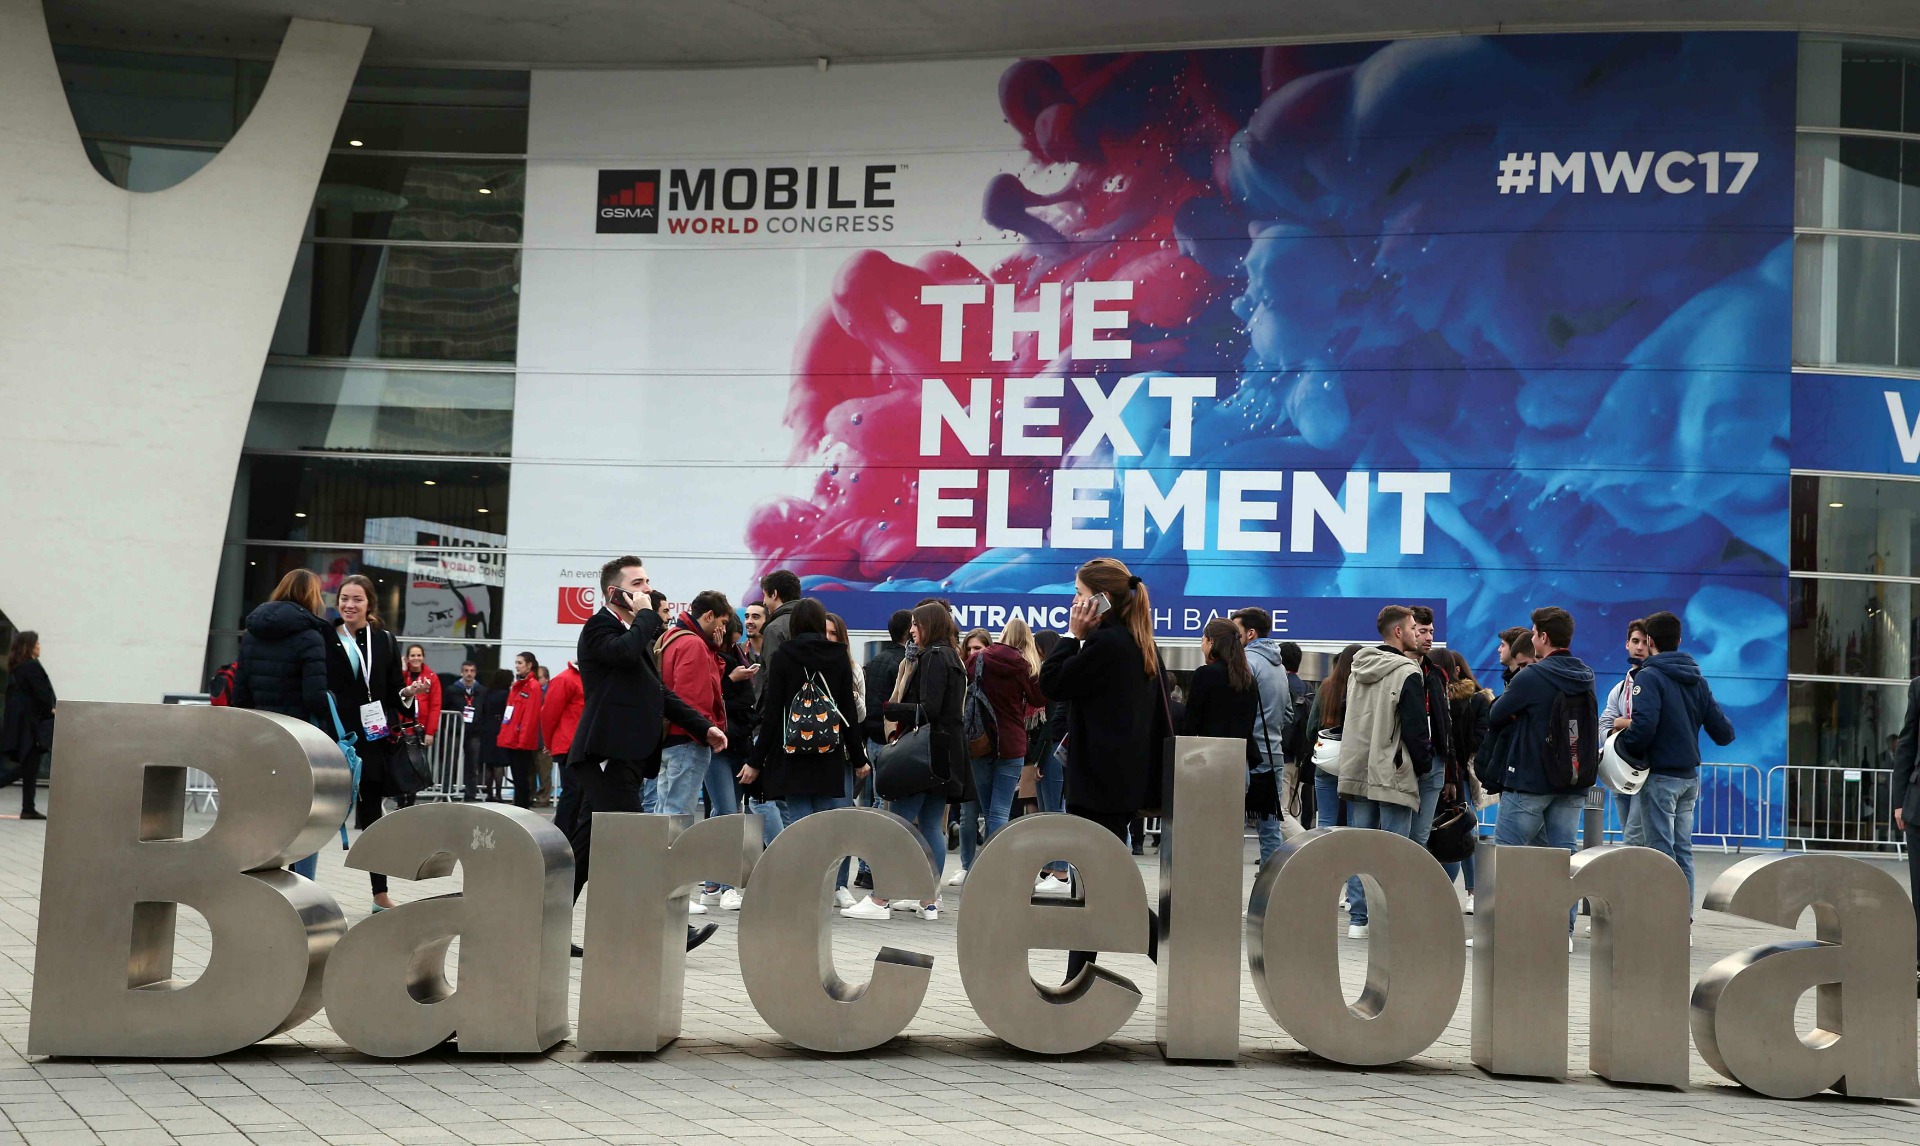 Barcelona acoge el Mobile World Congress, la cita anual más importante de la telefonía móvil